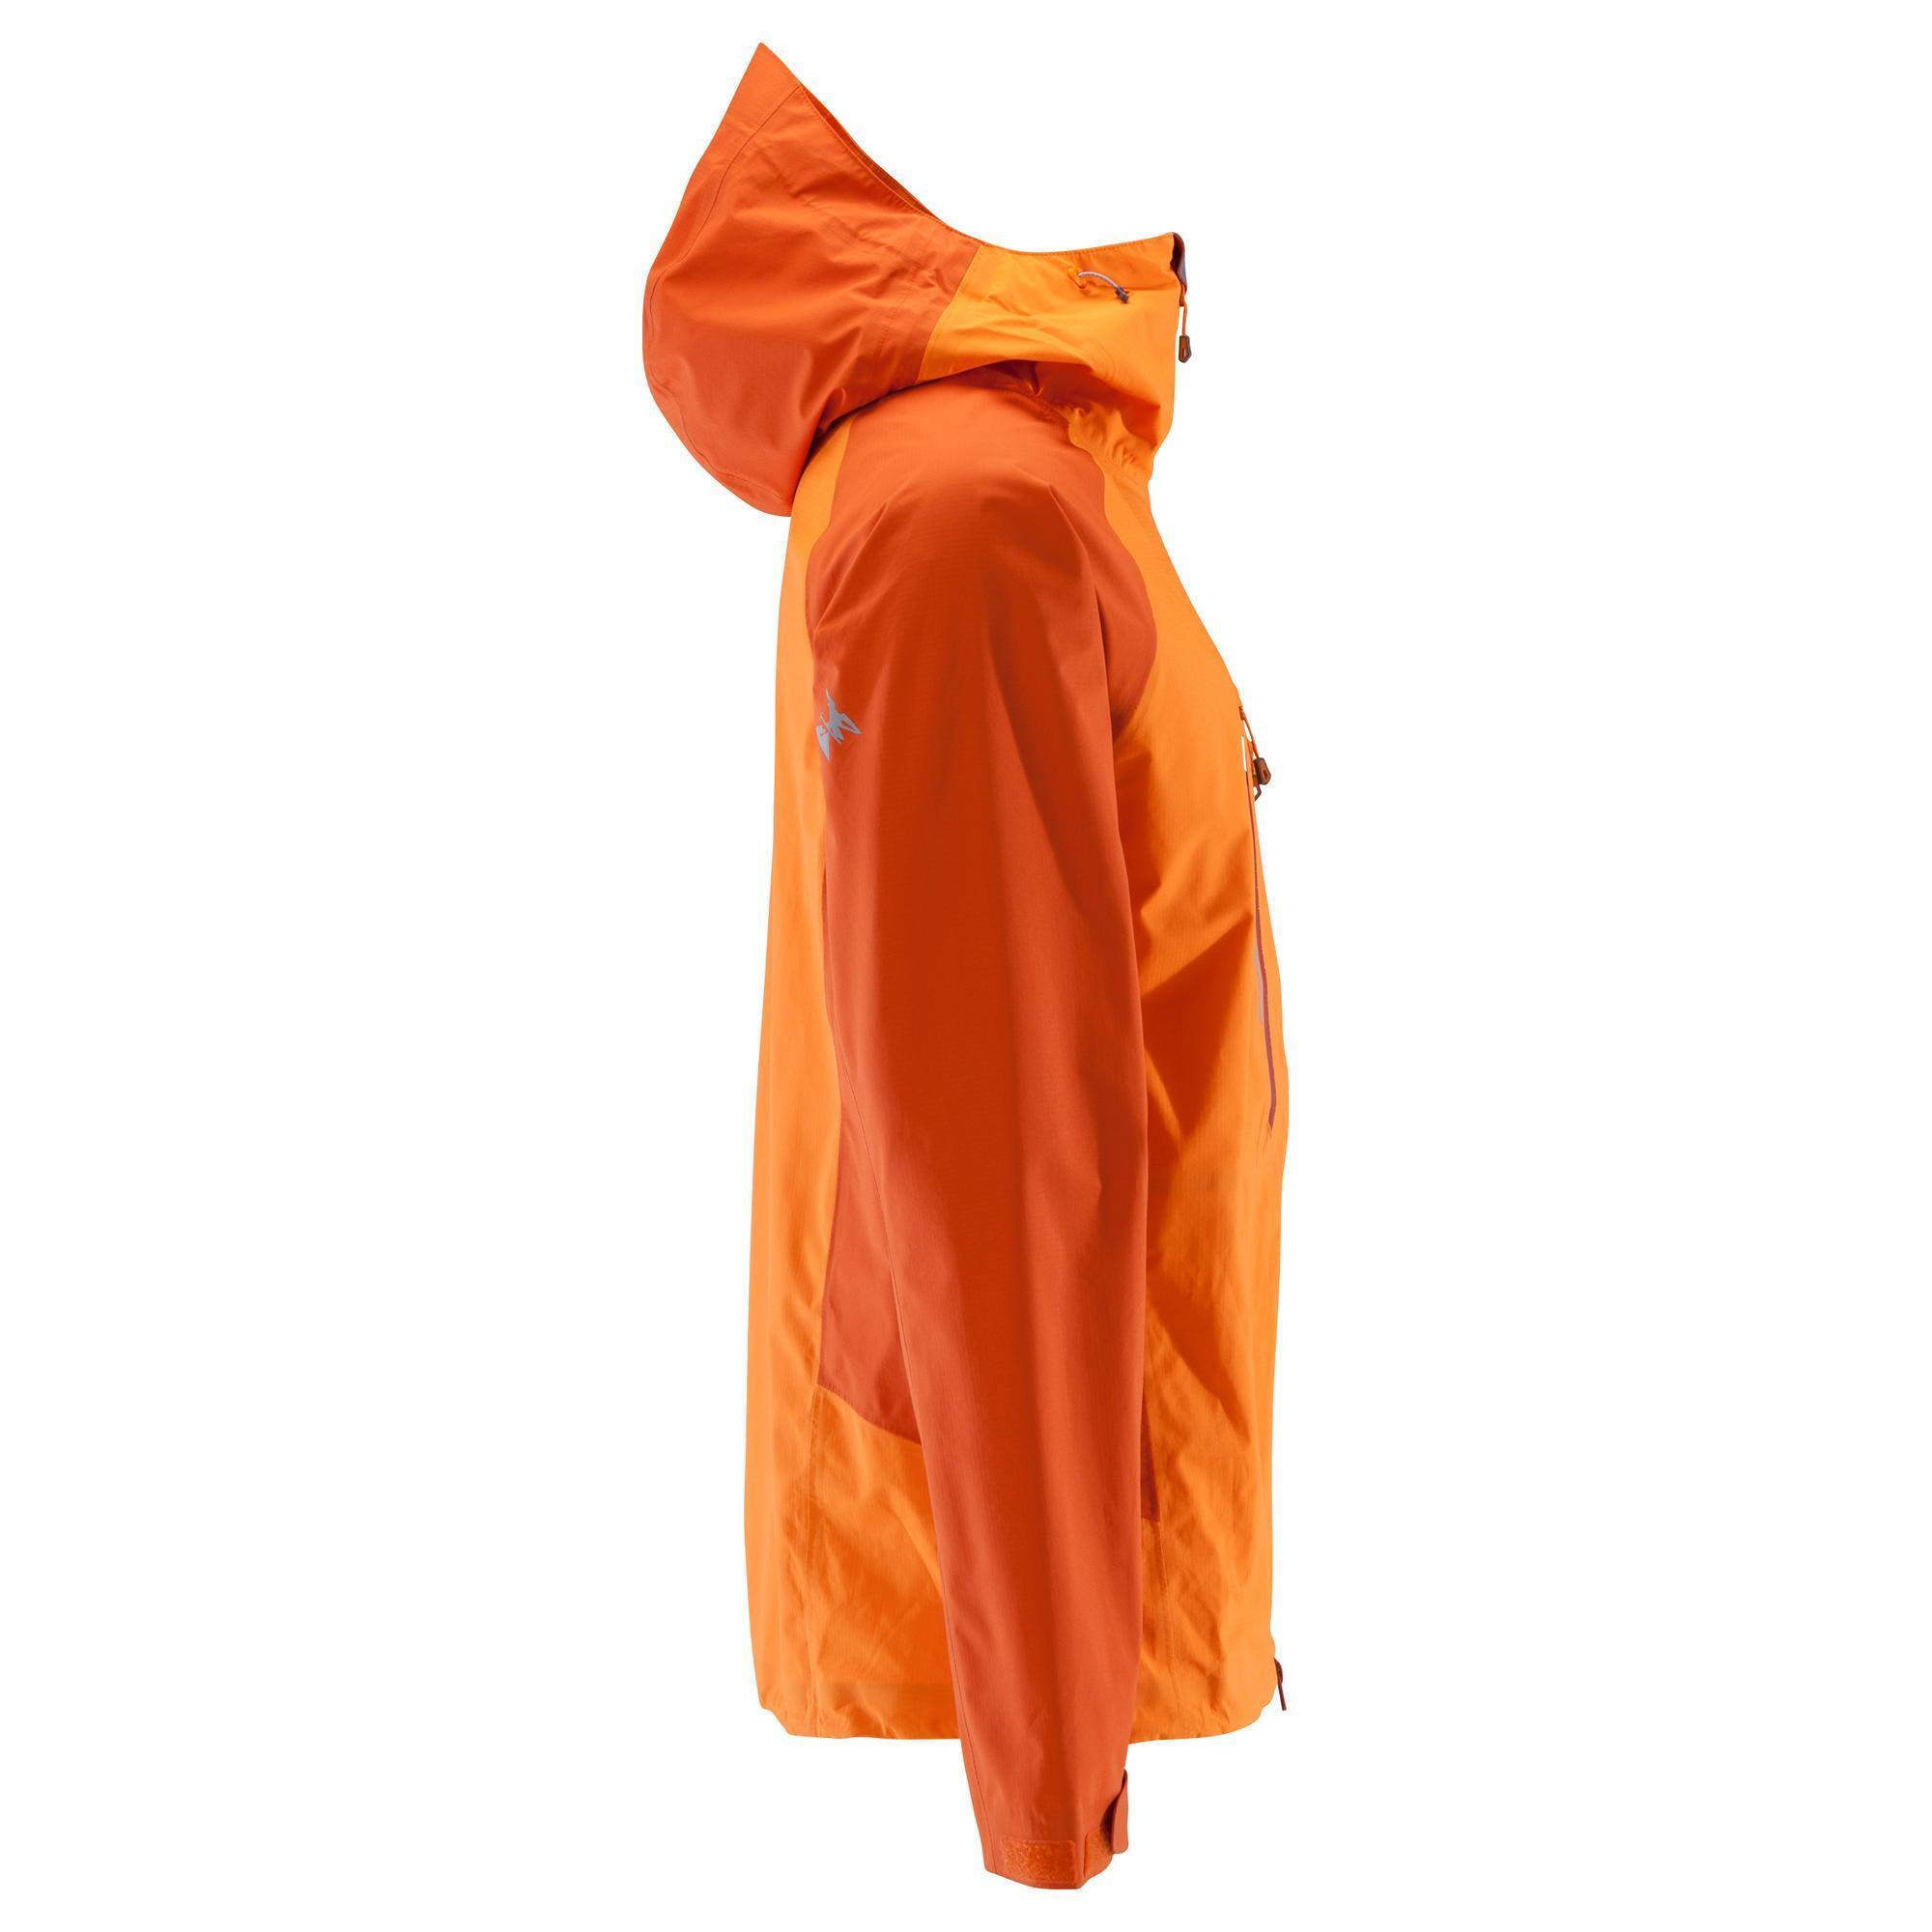 Men's Mountaineering Waterproof Jacket - Alpinism Light Orange 3/11